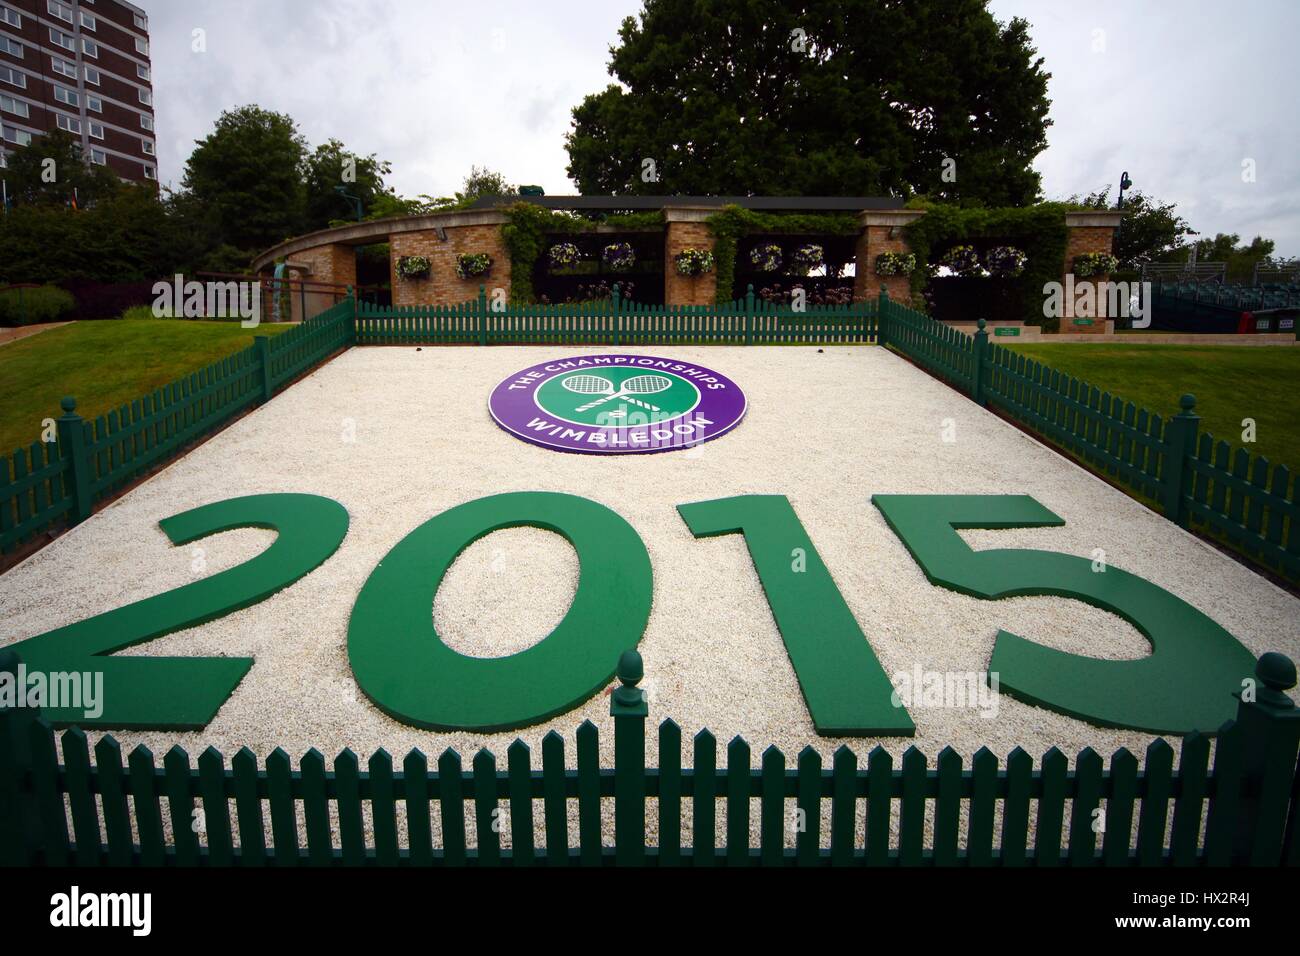 2015 EL LOGOTIPO DE WIMBLEDON EL CAMPEONATO DE WIMBLEDON 20 del All England Club de Tenis de Wimbledon en Londres, Inglaterra, 28 de junio de 2015 Foto de stock